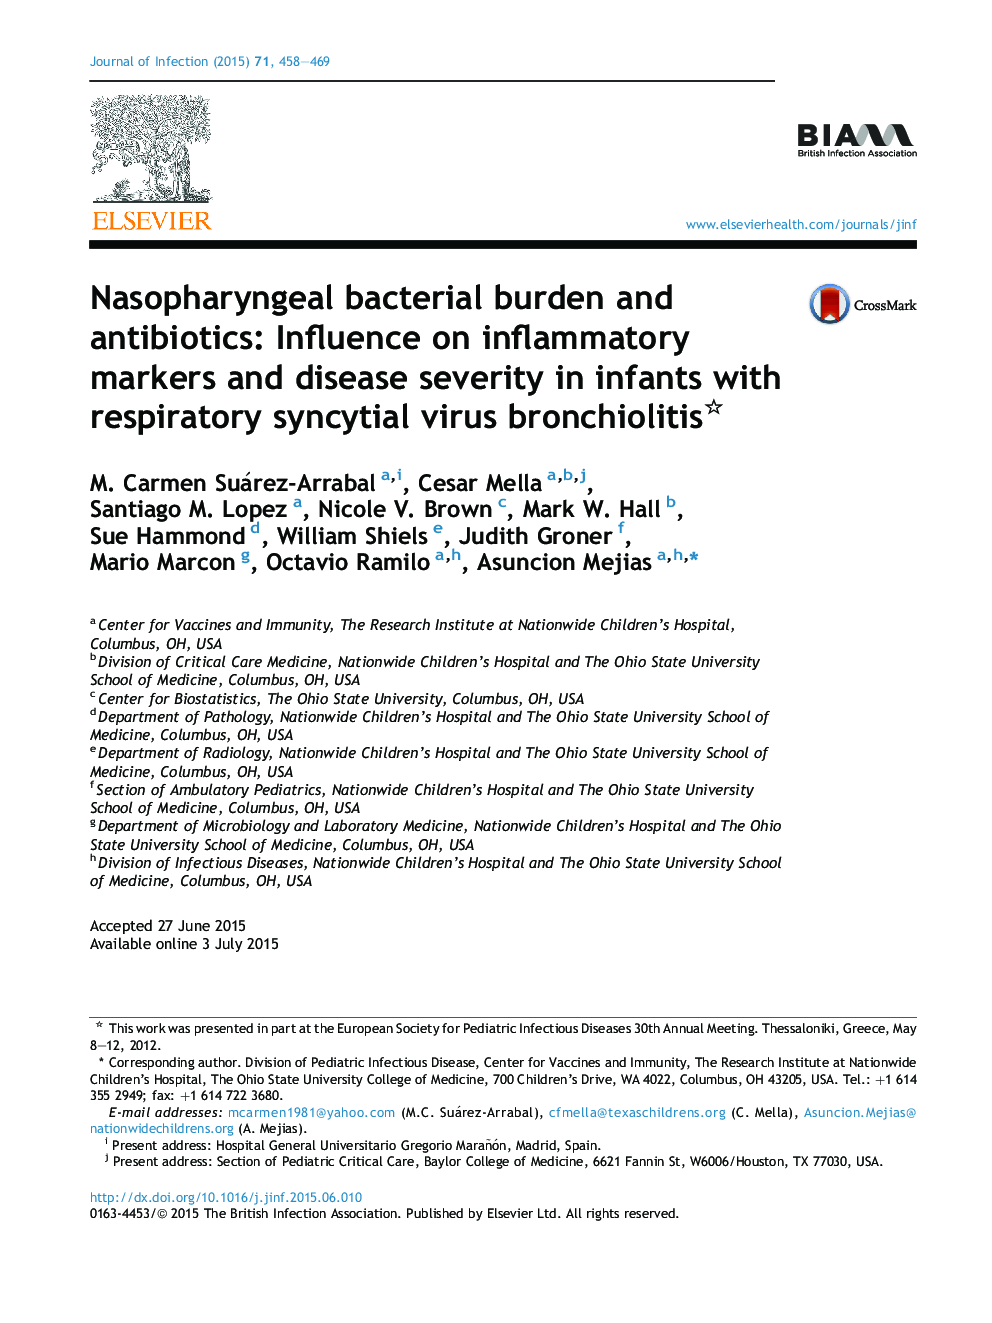 بار باکتریایی نازوفارنکس و آنتی بیوتیک: تأثیر بر روی نشانگرهای التهابی و شدت بیماری در نوزادان مبتلا به برونشیولیت ویروسی سینسیتیال تنفسی 